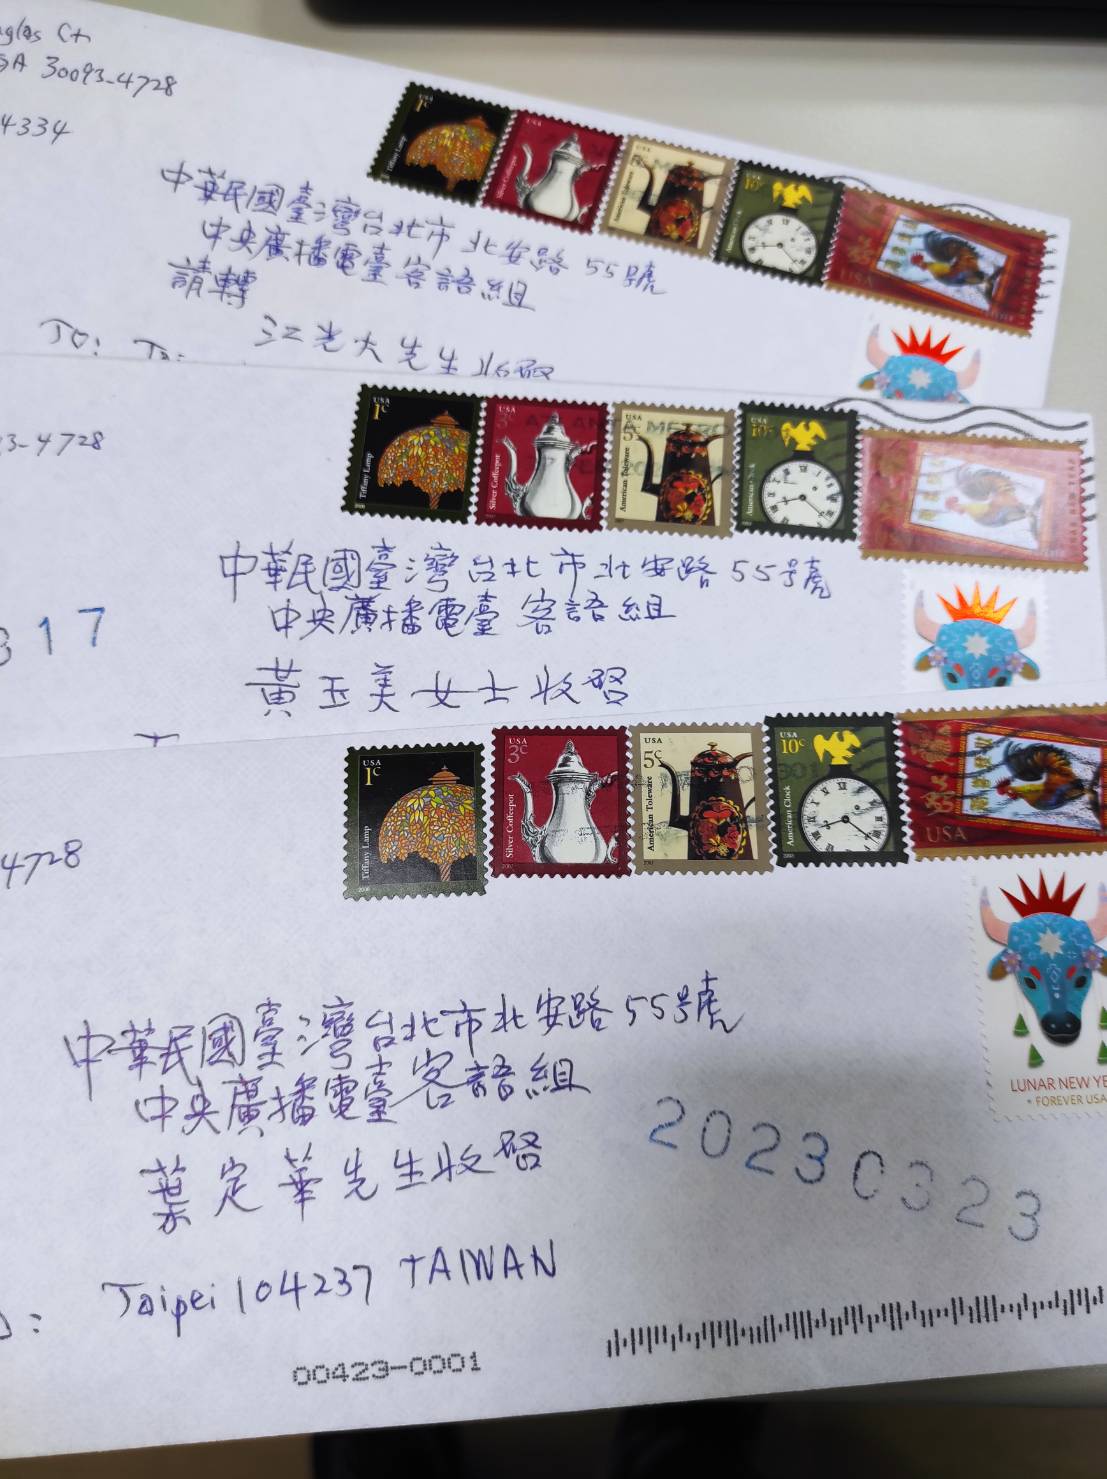 聽友來信郵票也是亮點，方寸之間遨遊全世界